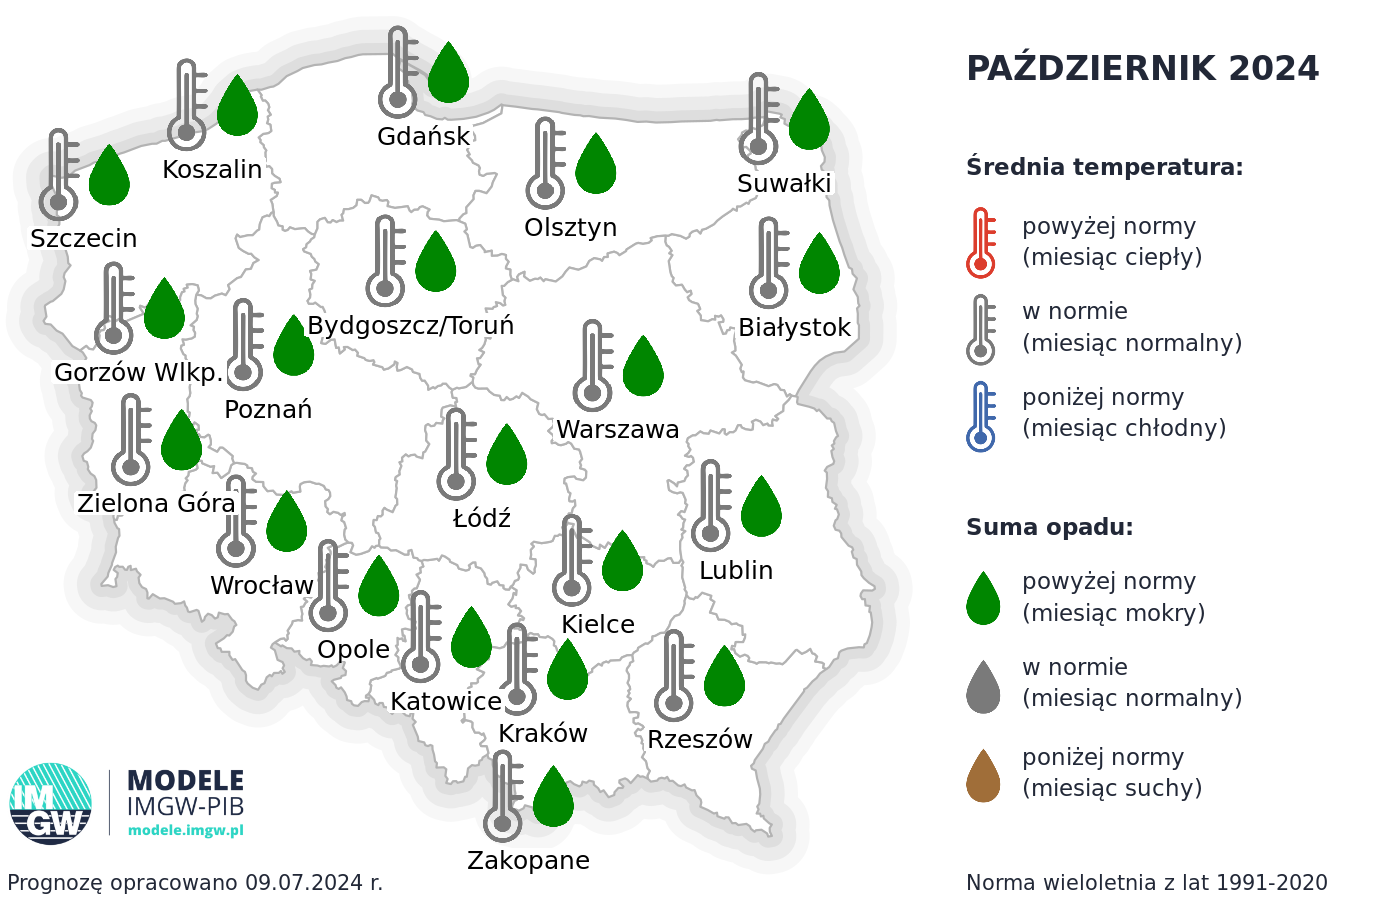 Rys. 3. Prognoza średniej miesięcznej temperatury powietrza i miesięcznej sumy opadów atmosferycznych na październik 2024 r. dla wybranych miast w Polsce